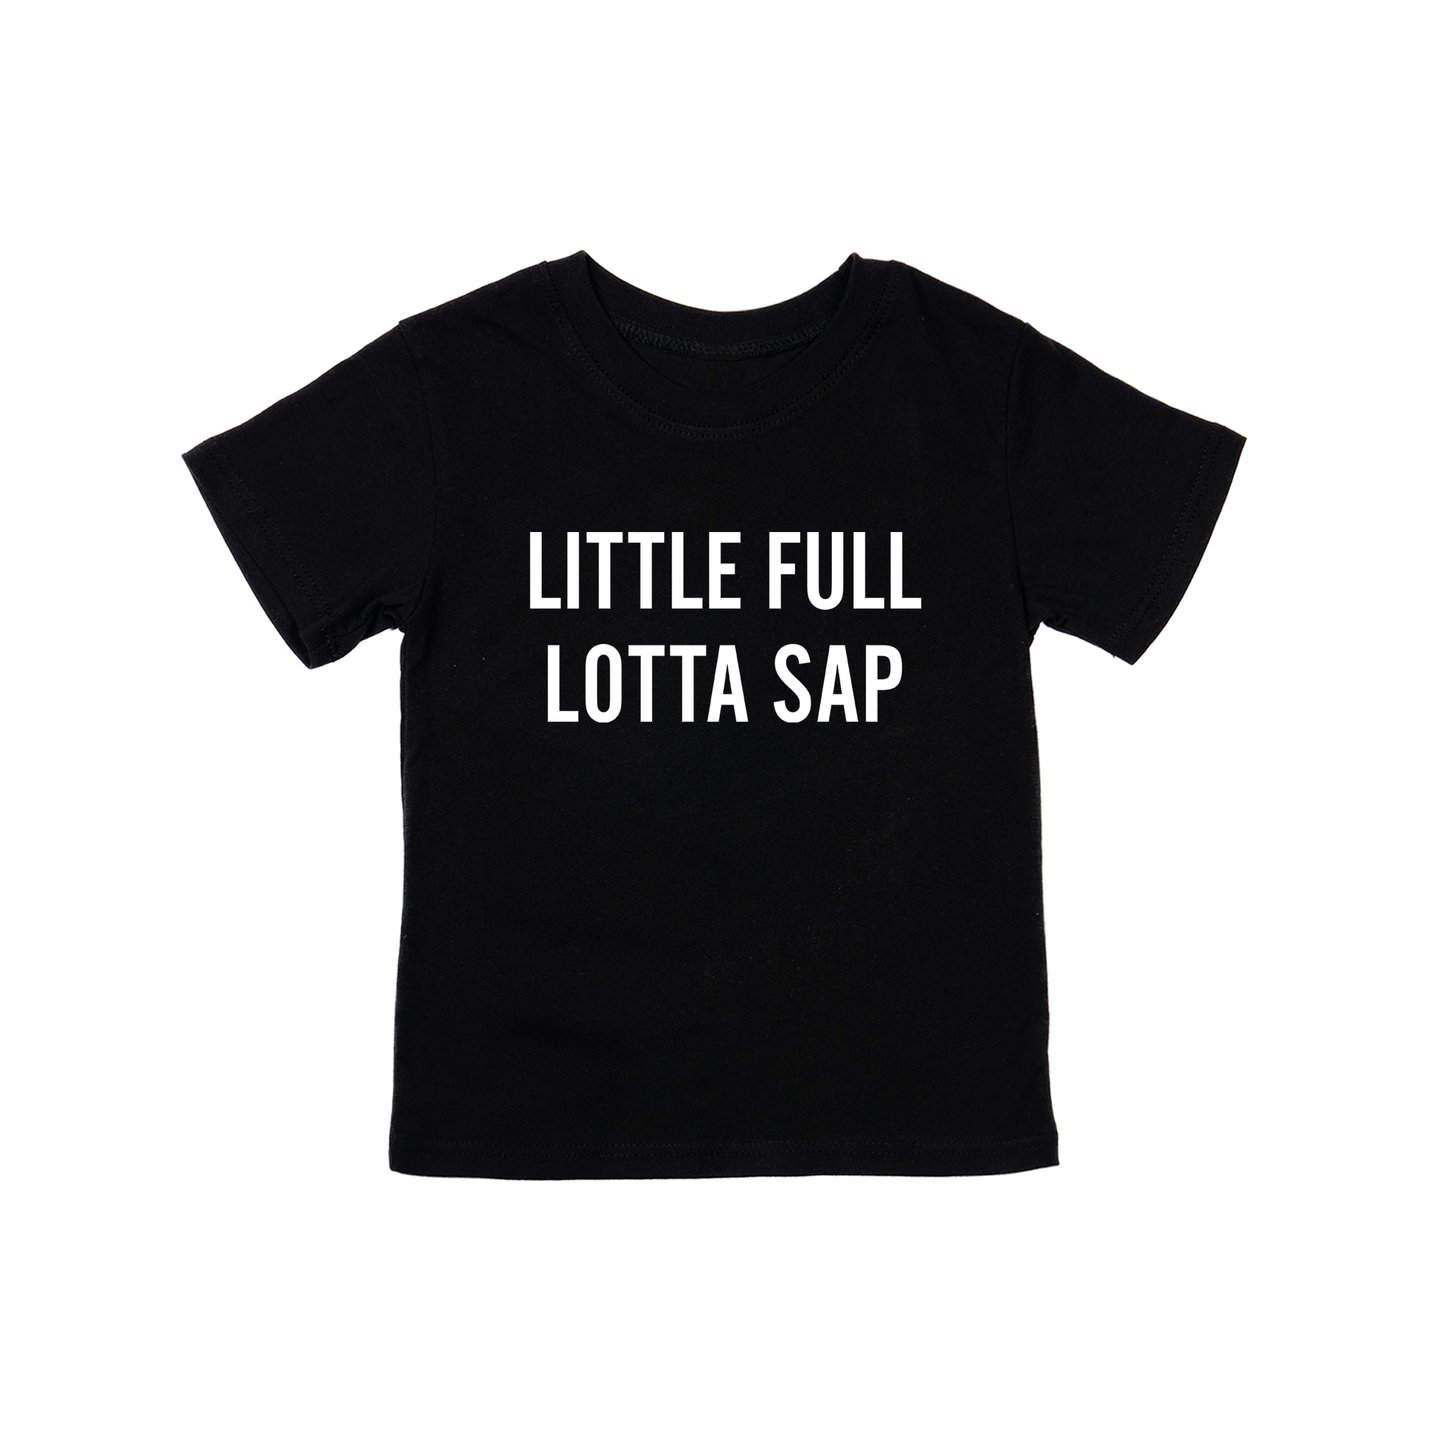 Little Full Lotta Sap (White) - Kids Tee (Black)